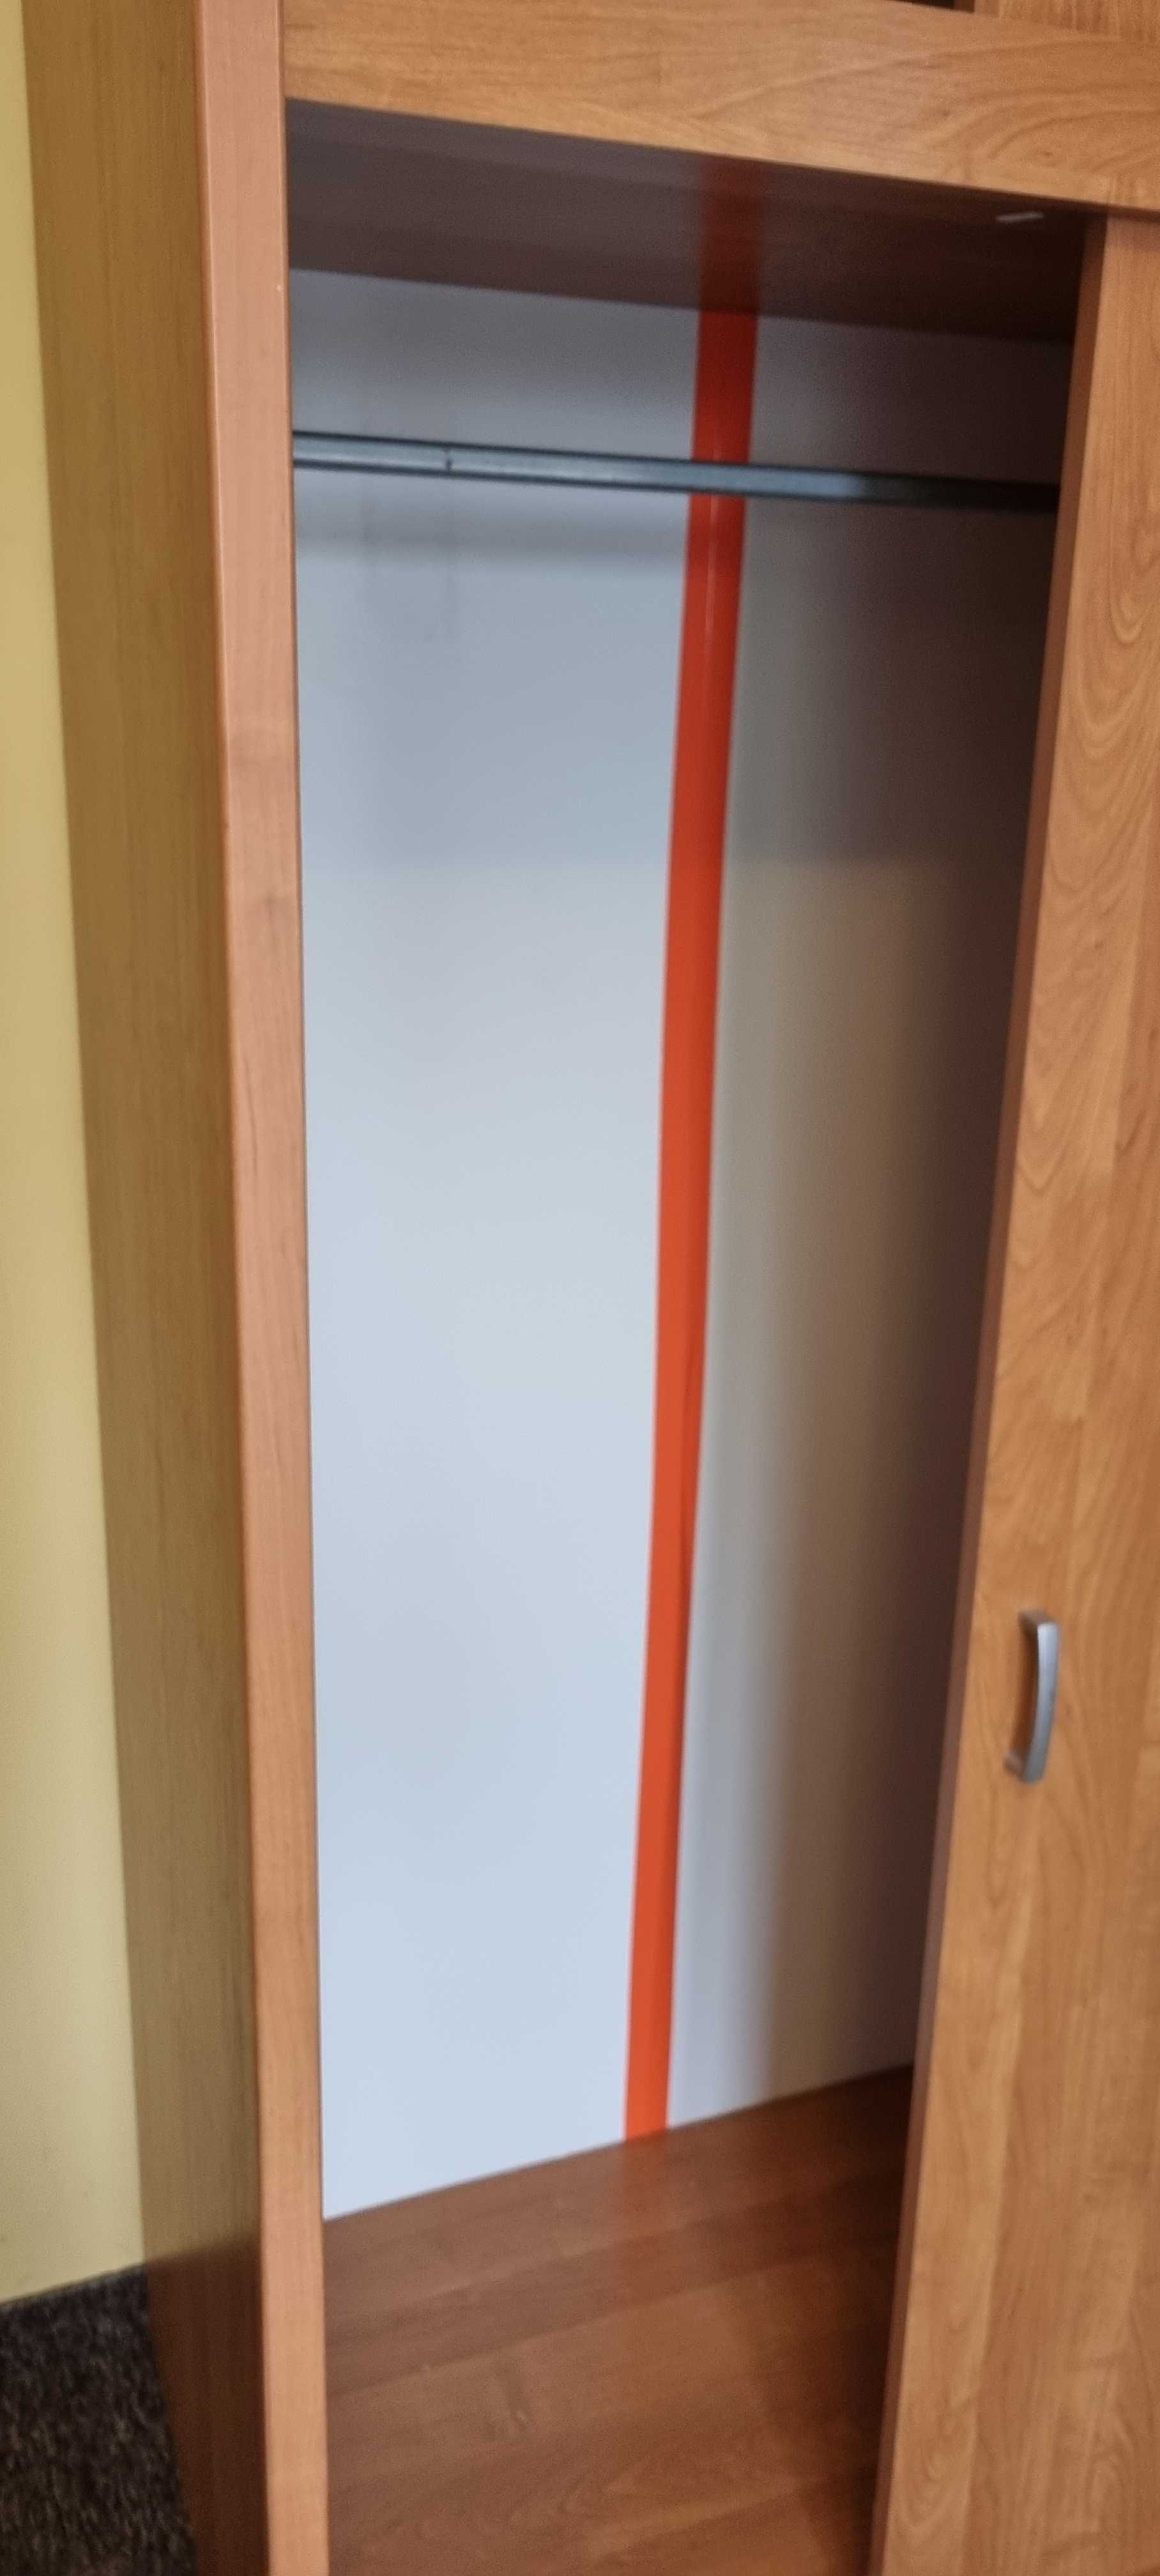 Szafa dwudrzwiowa z odsuwanymi drzwiami w kolorze drewna.